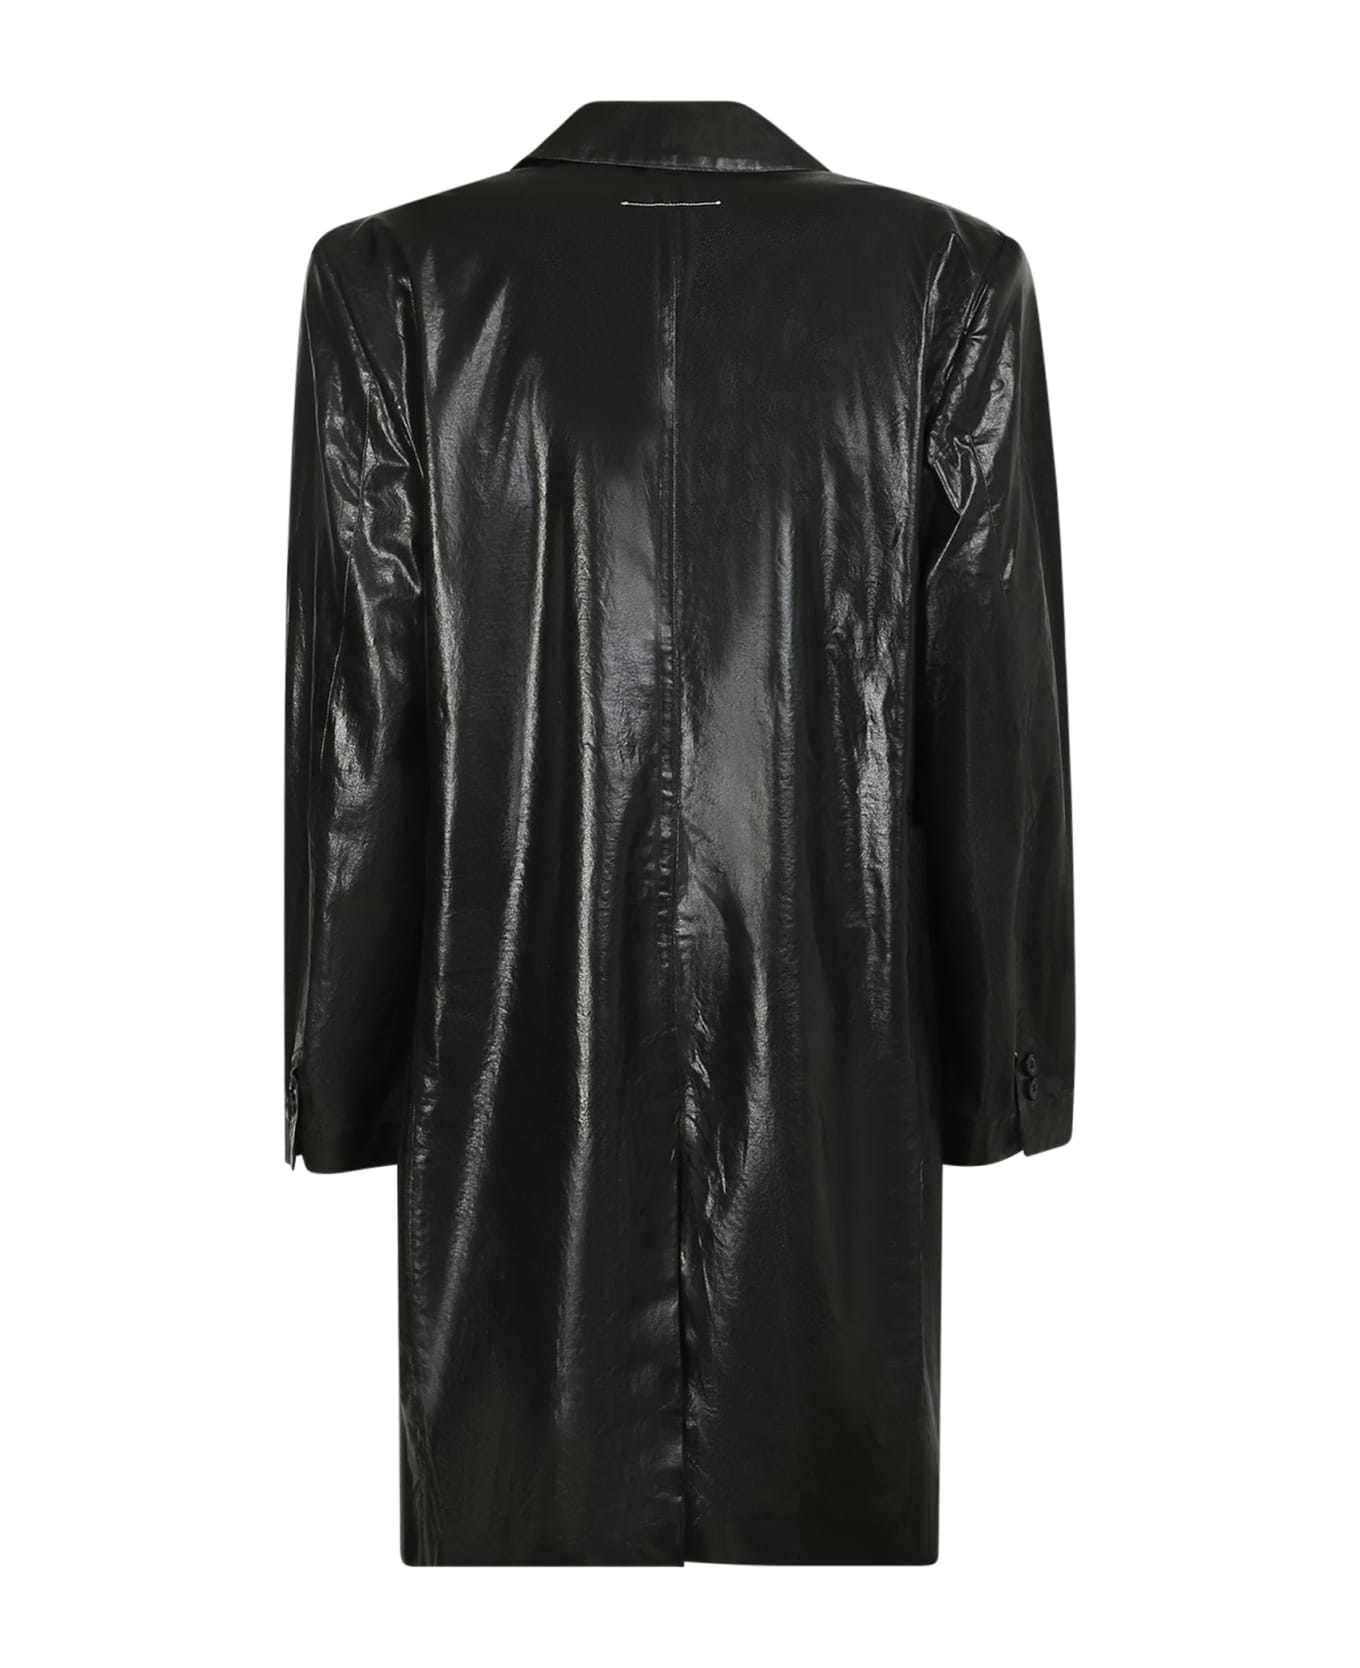 MM6 Maison Margiela Leather Jacket - Black コート